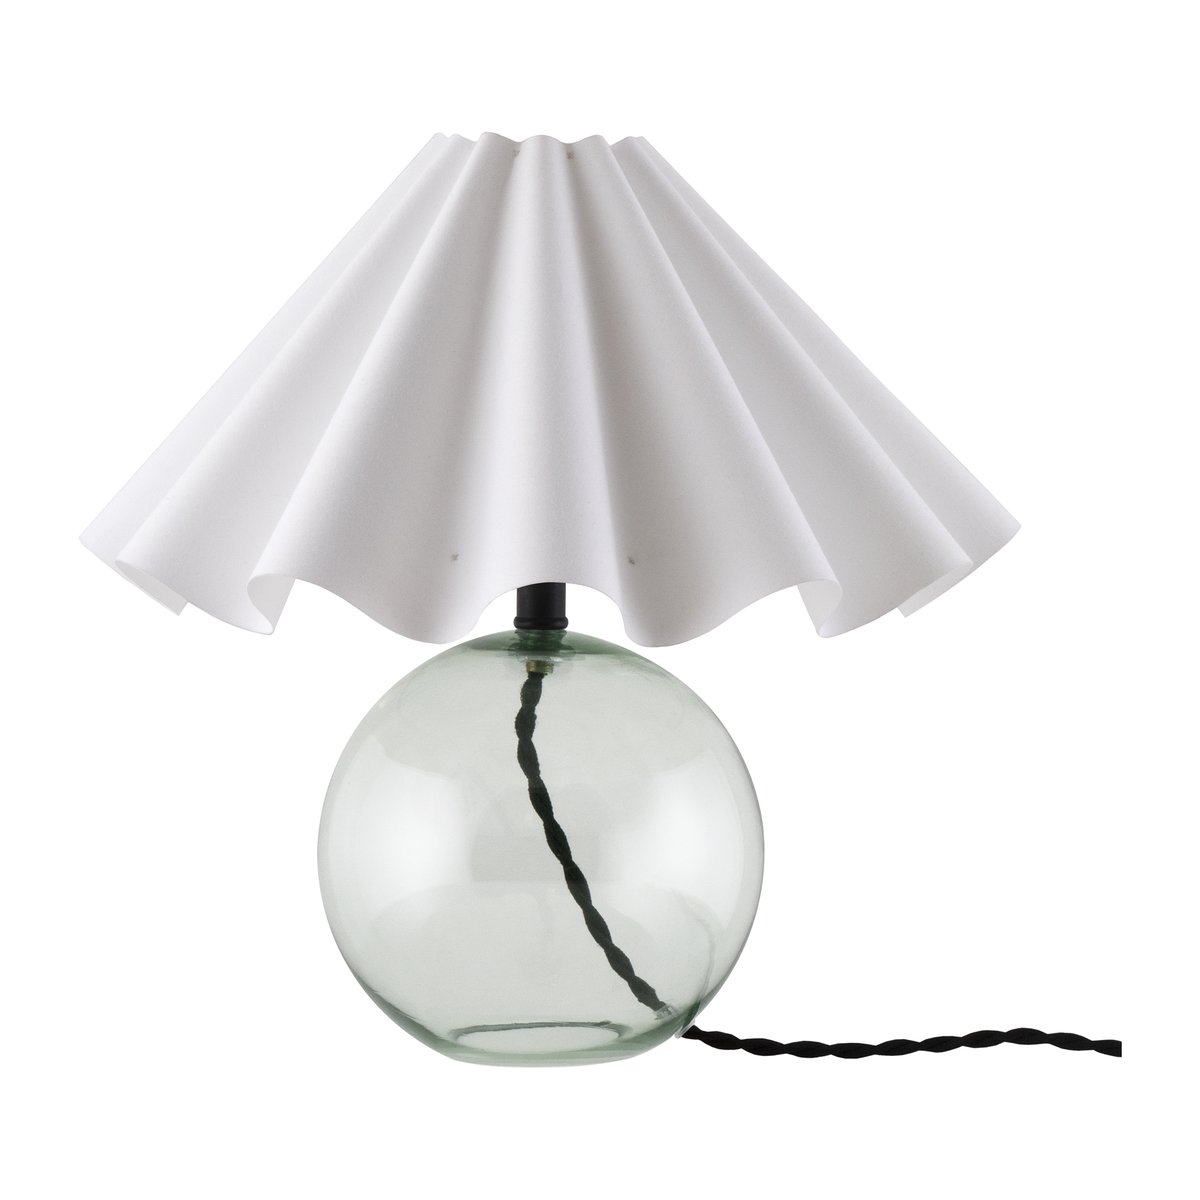 Bilde av Globen Lighting Judith bordlampe Ø 30 cm Grønn-hvit